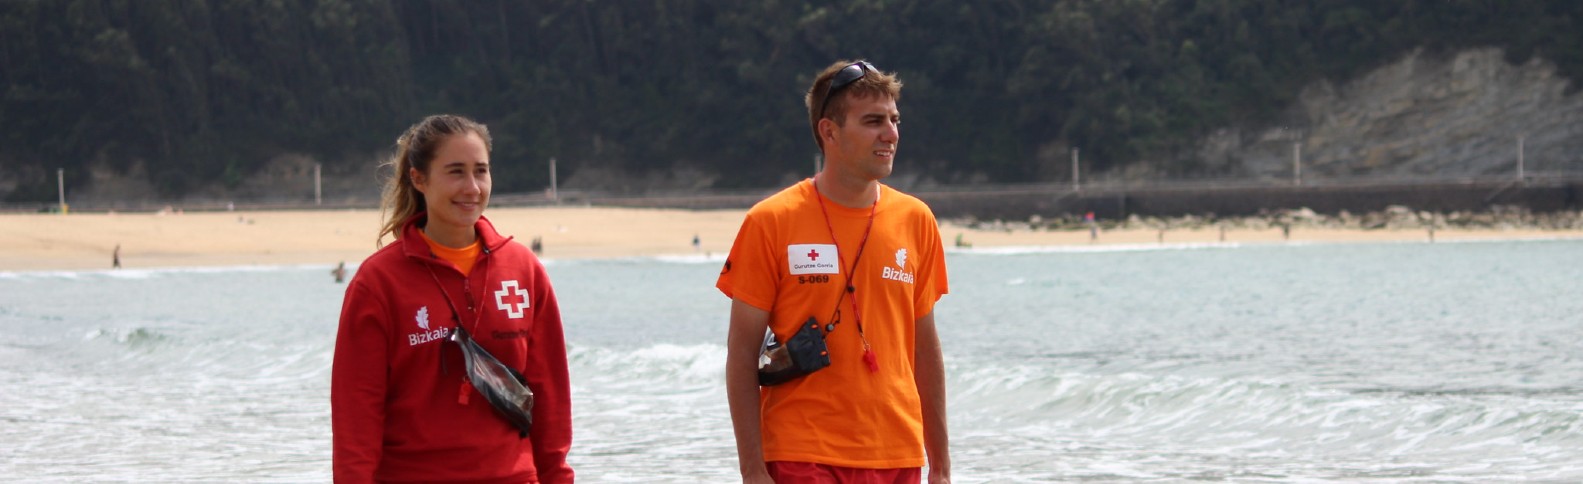 Más de 55.000 atenciones en playas y aguas continentales: Cruz Roja hace balance de su actuación en verano